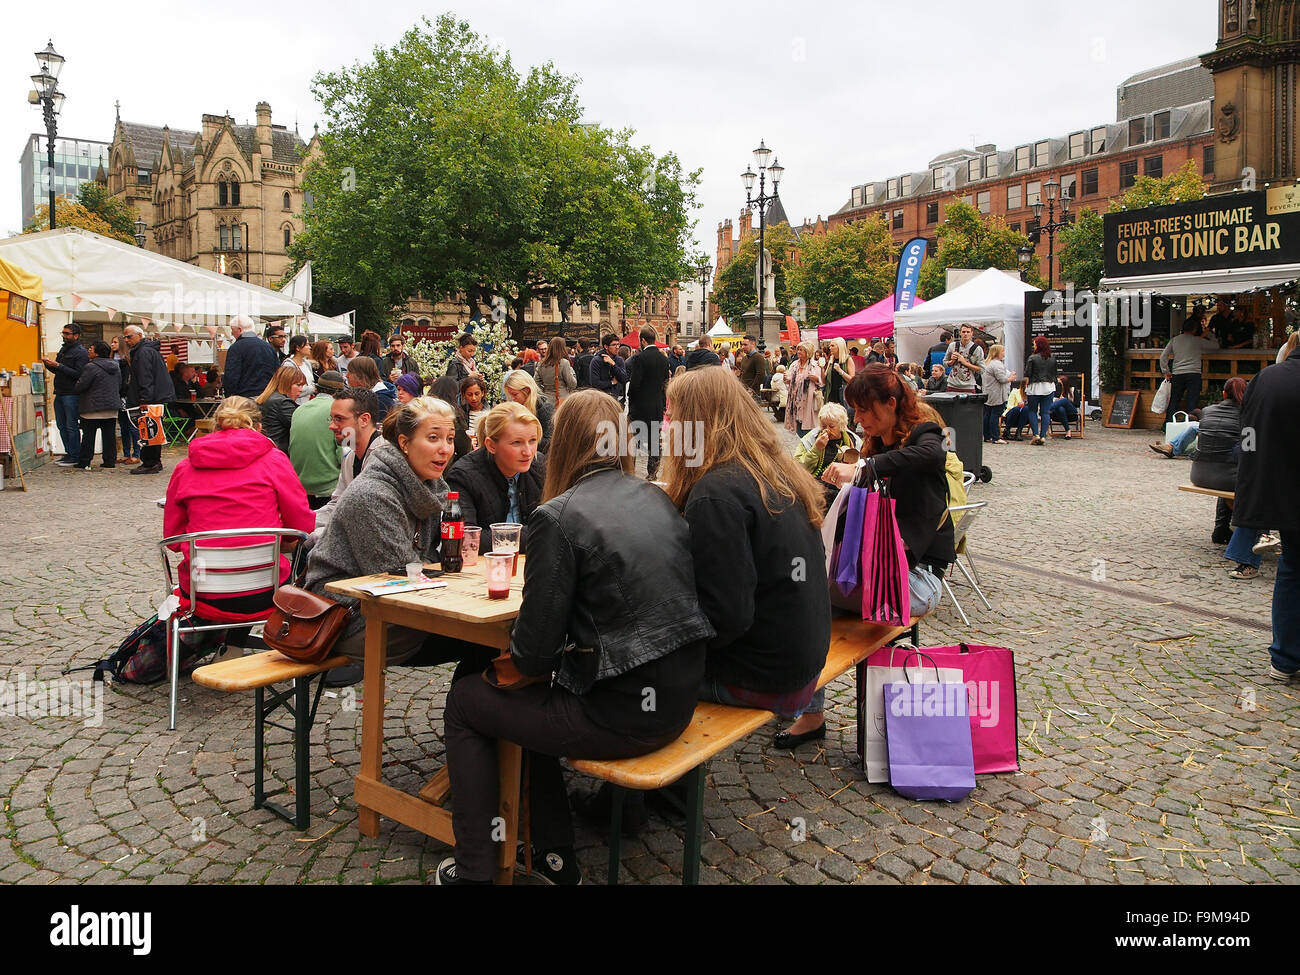 Manchester Food Festival 2015 - persone in piazza Albert godendo di aria aperta cibi e bevande presso la celebrazione annuale. Foto Stock